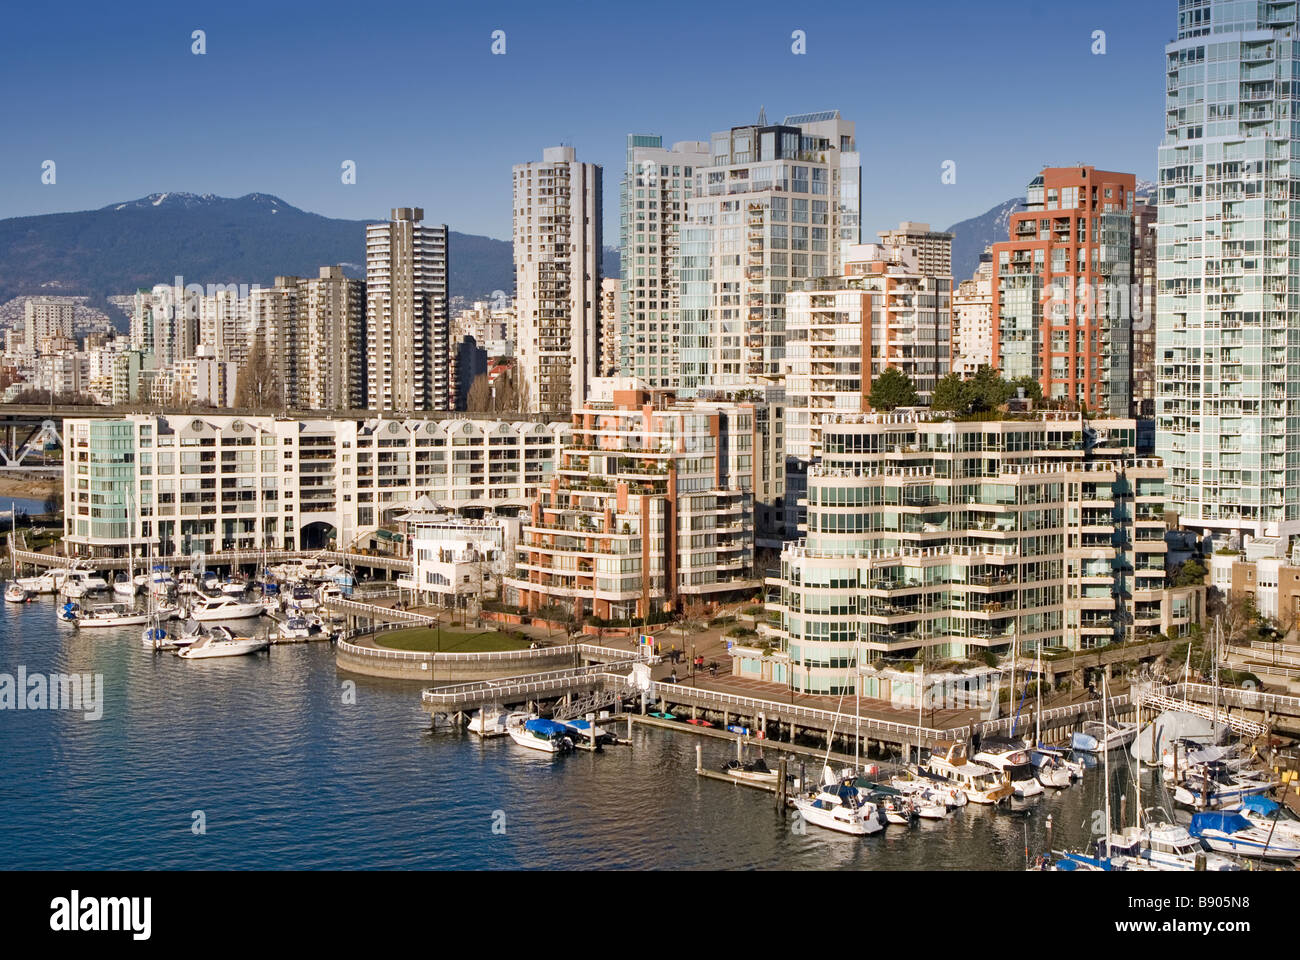 Cher condos au centre-ville de Vancouver, au bord de l'eau, montagnes en arrière-plan Banque D'Images